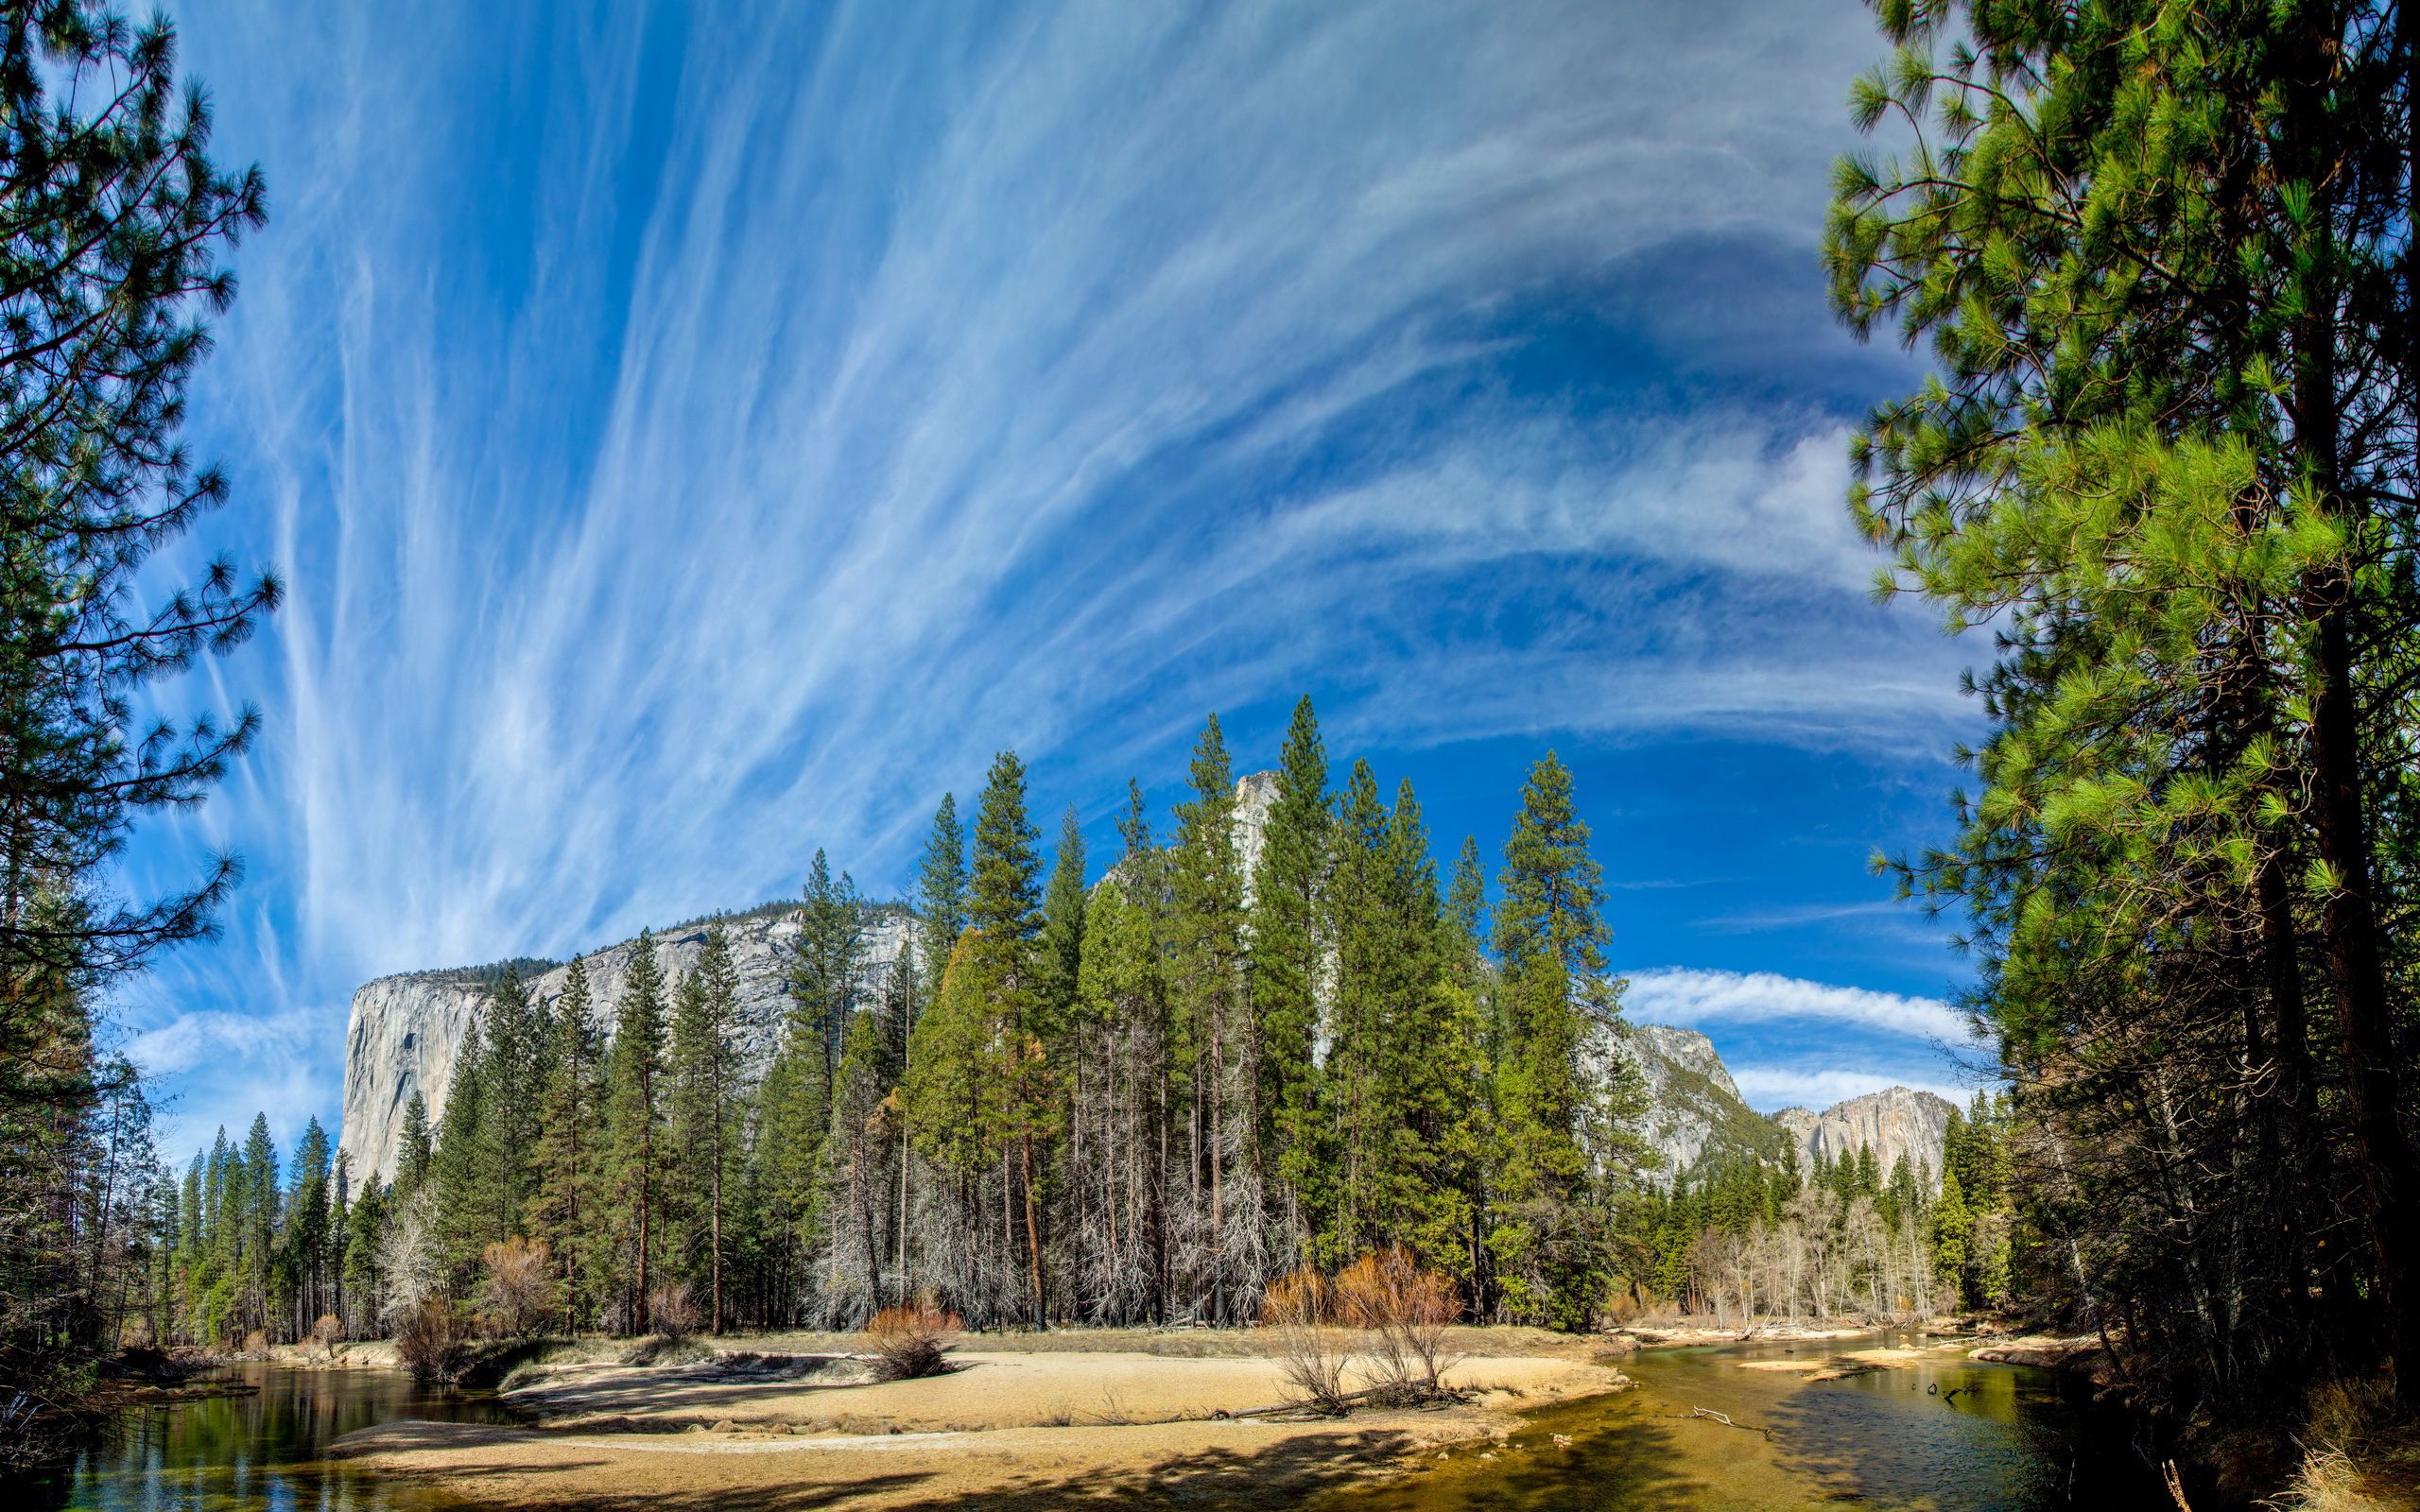 Скачать обои Yosemite National Park на телефон бесплатно